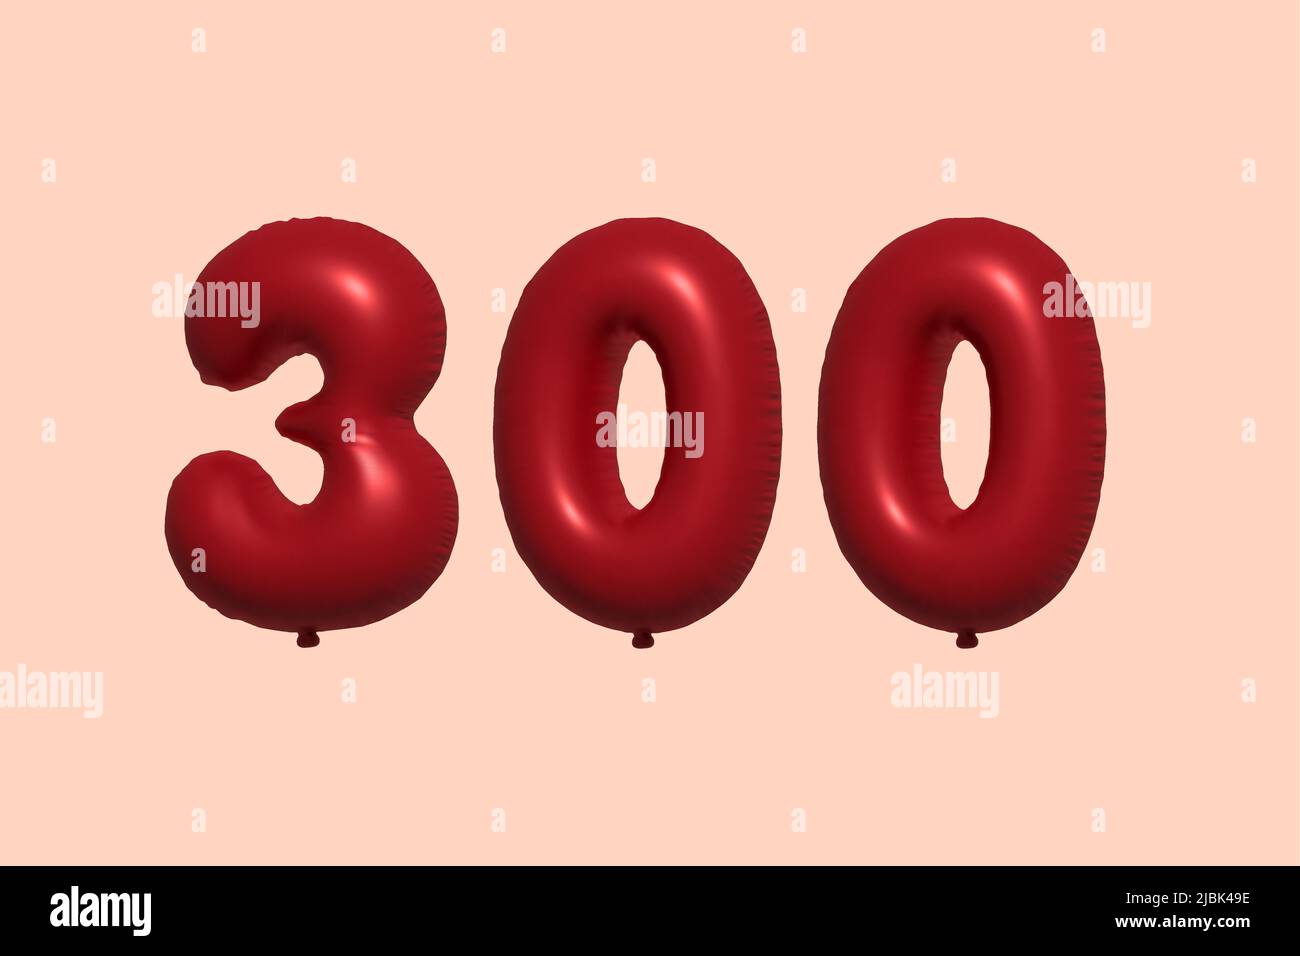 Ballon Noir Jaune Numéro Cent 100 D'hélium Image stock - Image du  scintillement, numéro: 118463001